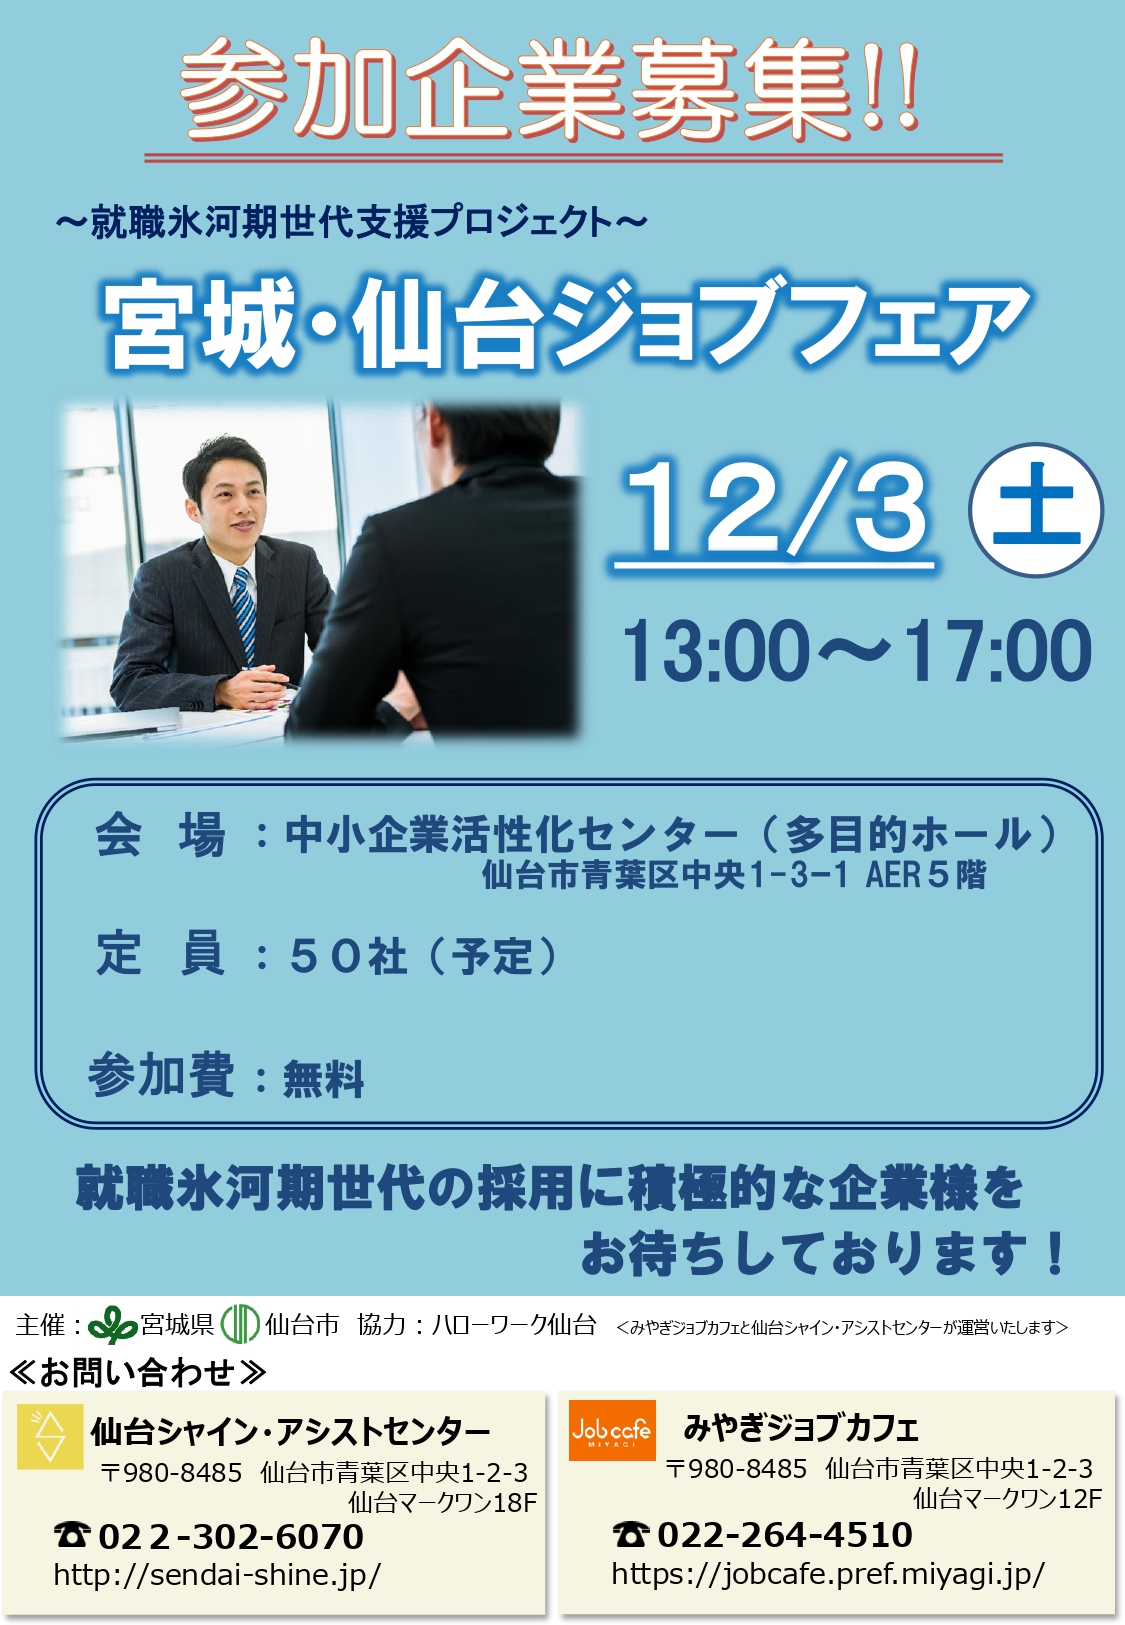 【9/30まで】合同企業説明会(12/3)参加企業募集のご案内